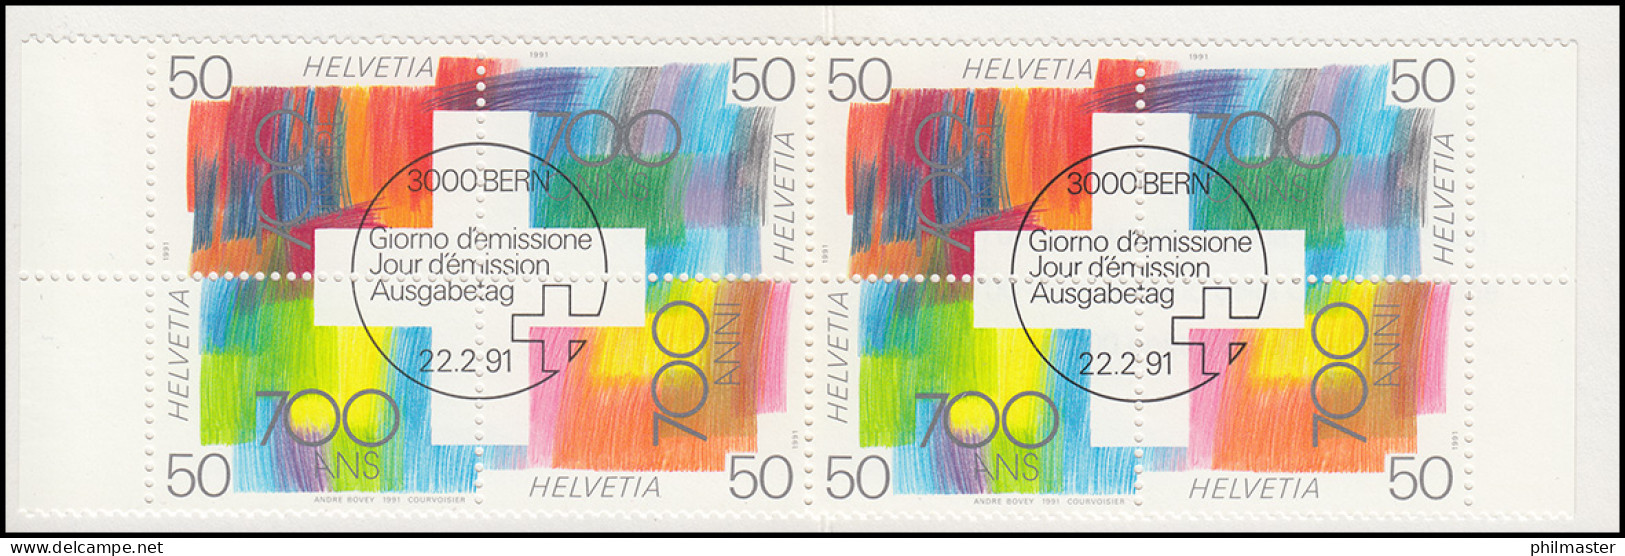 Schweiz Markenheftchen 0-89, Eidgenossenschaft 1991, ESSt - Booklets